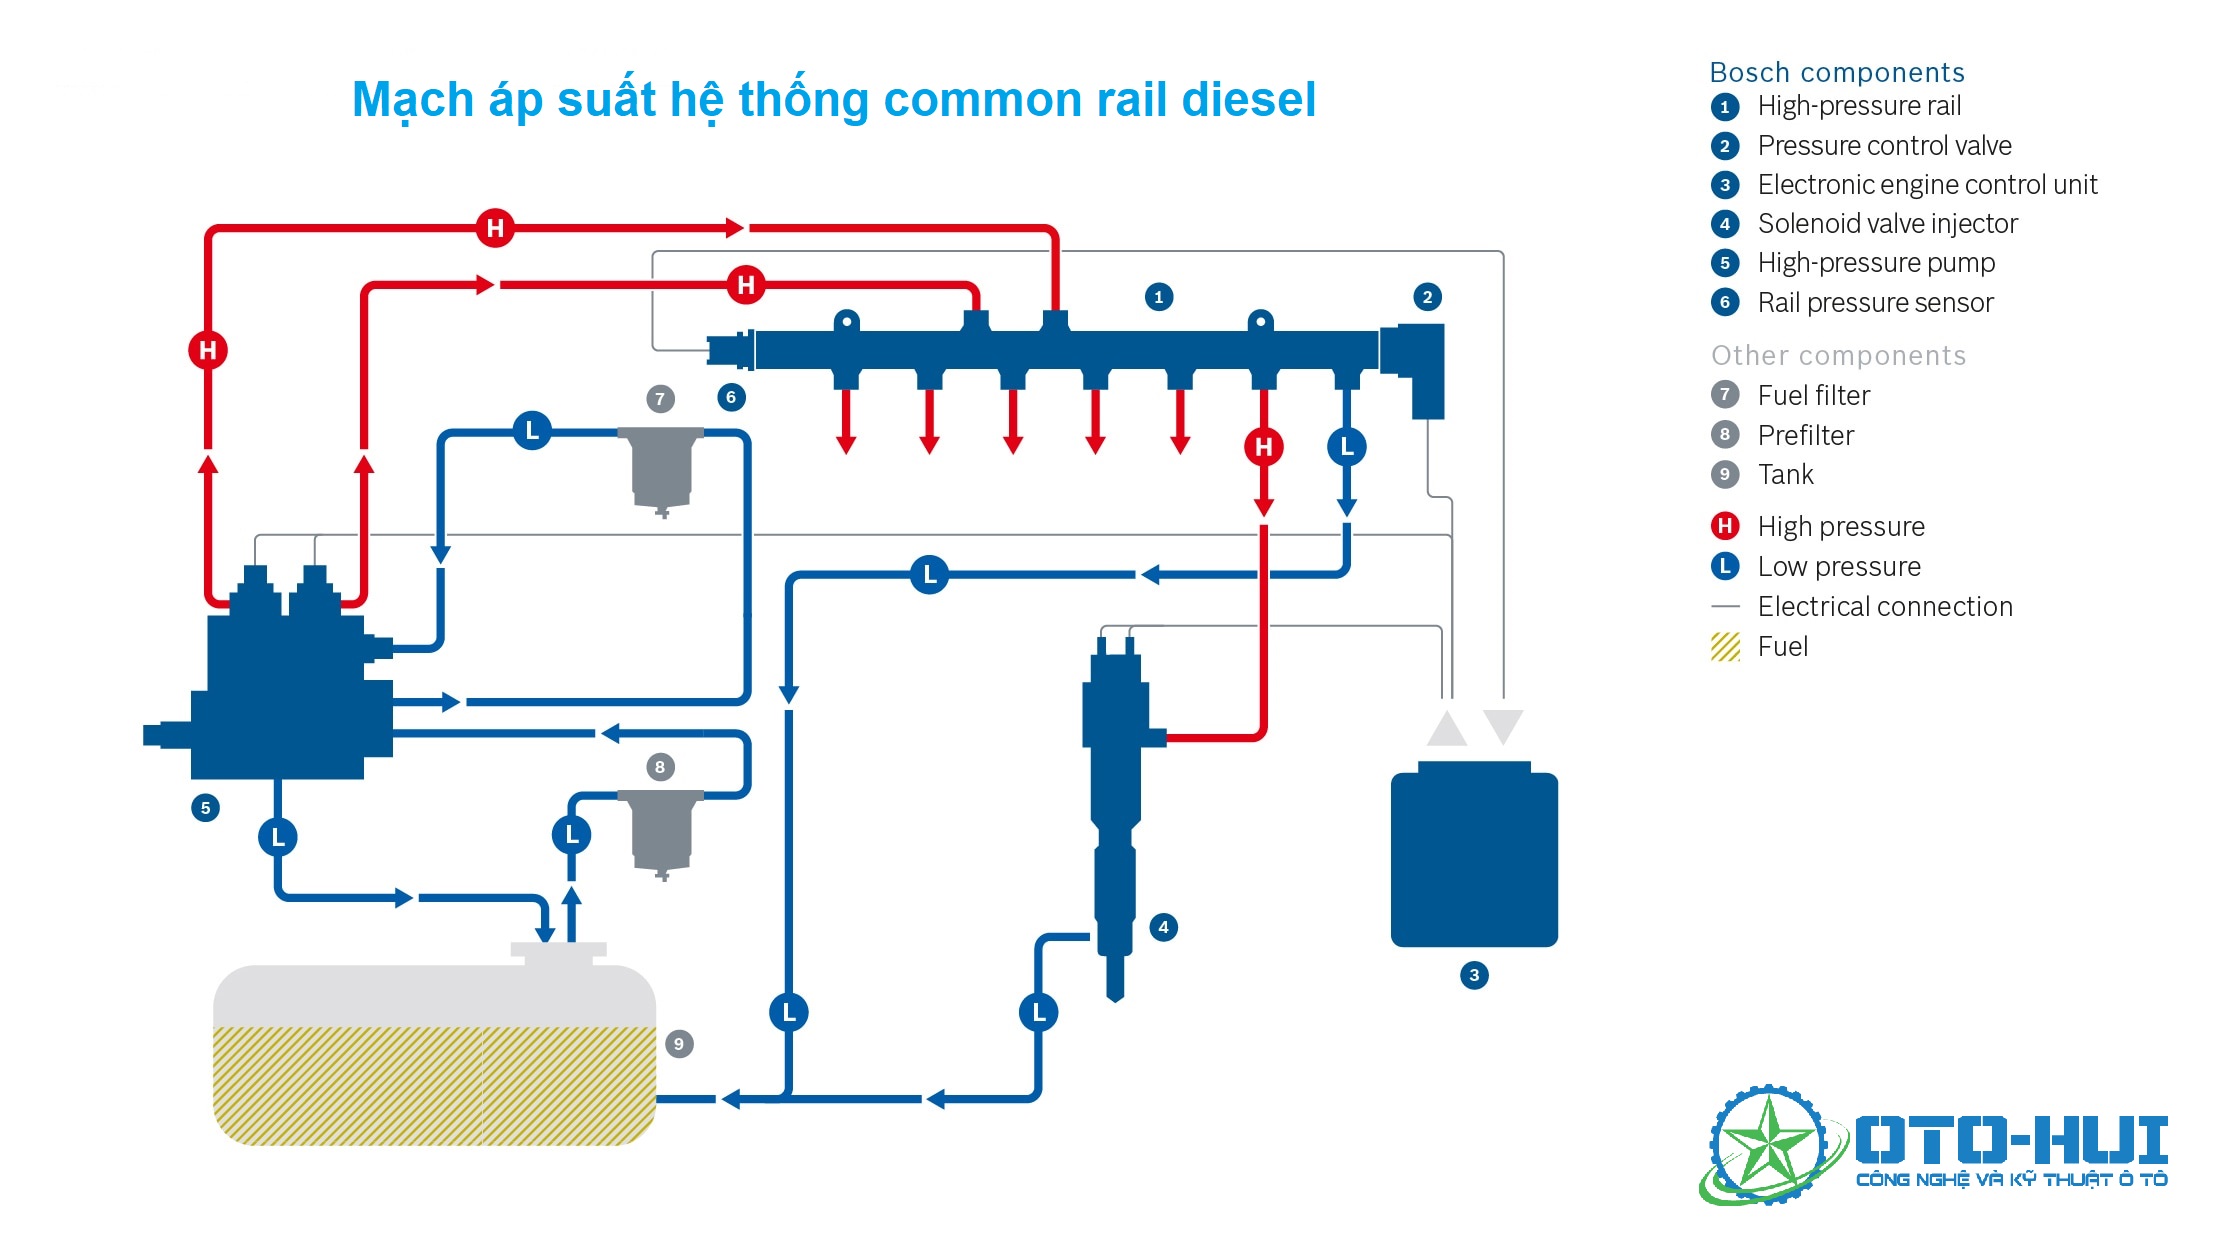 Mạch áp suất hệ thống diesel thông thường